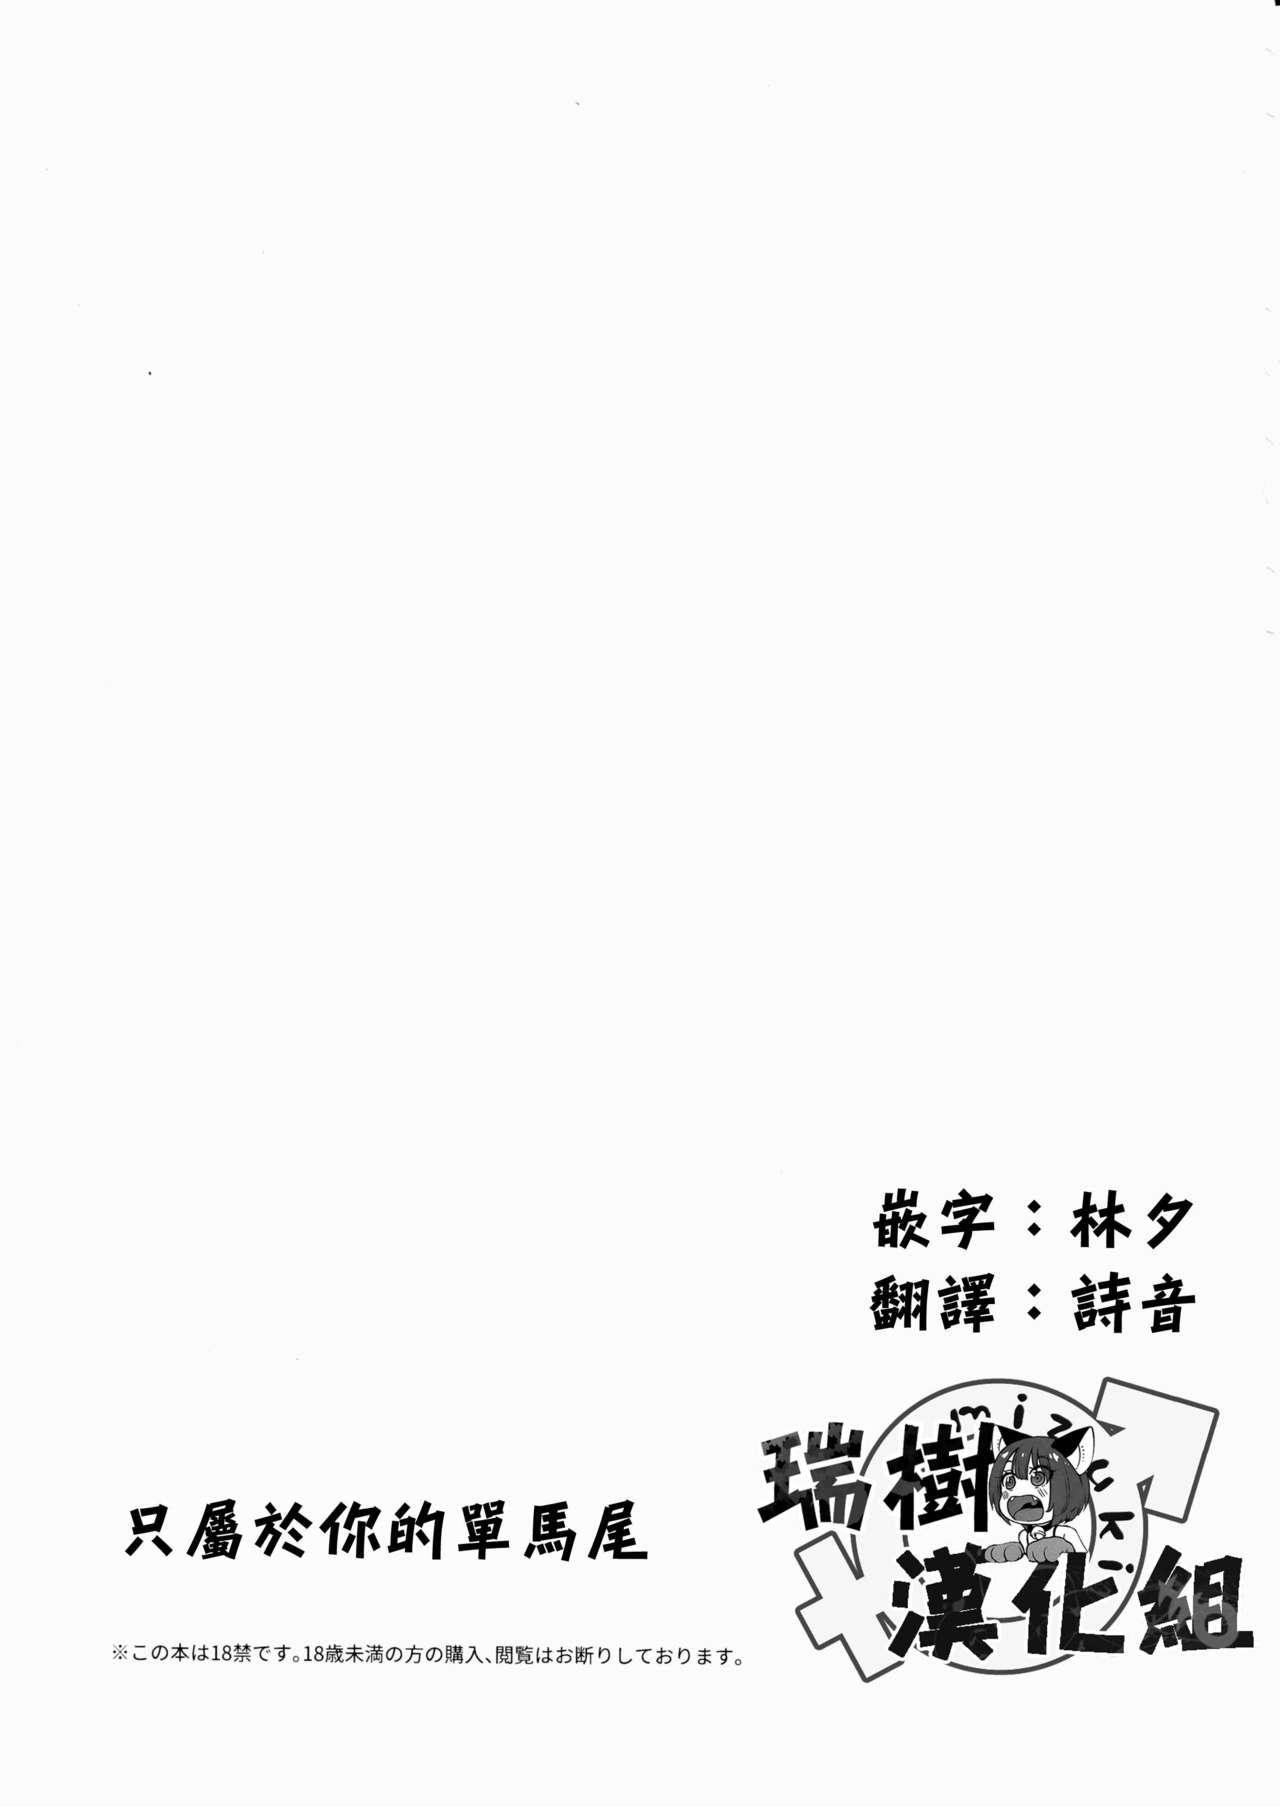 君だけのポニーテール(C90) [canaria (粉山カタ)]  [中国翻訳](33页)